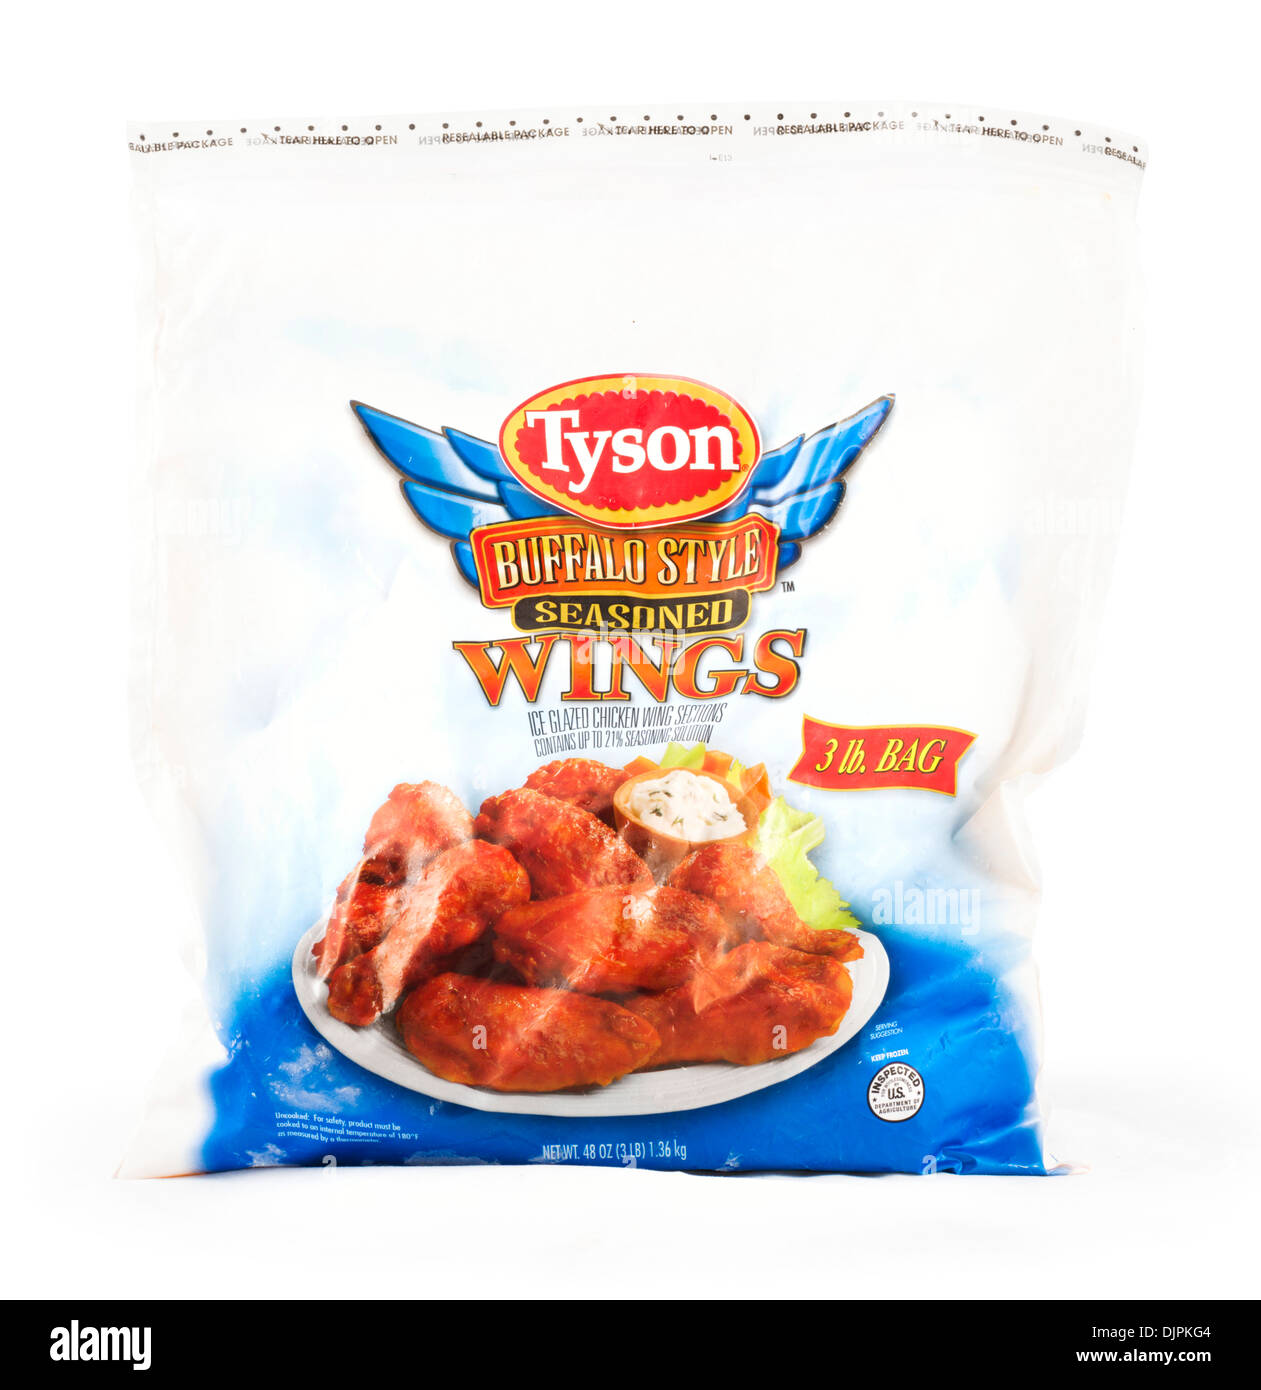 Bolsa de Tyson, alitas de pollo estilo búfalo, EE.UU. Foto de stock